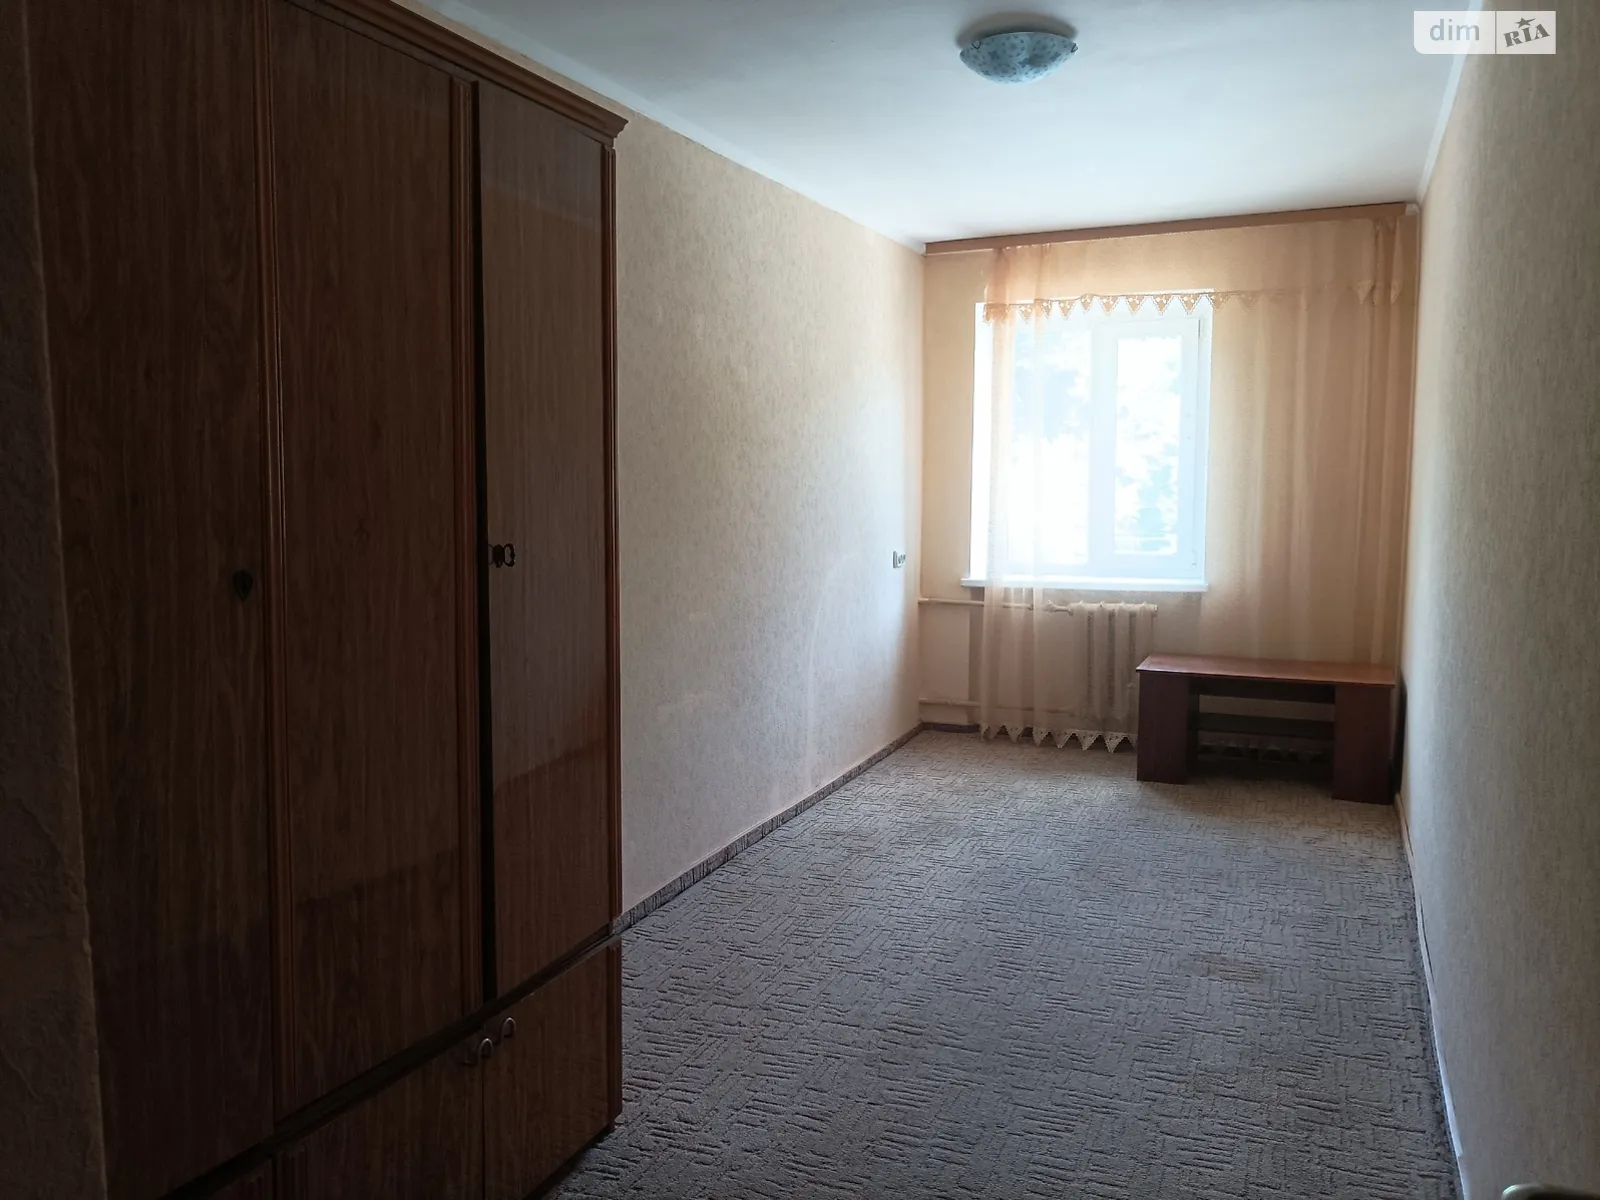 Продається 2-кімнатна квартира 44.5 кв. м у Вінниці, Хмельницьке шосе